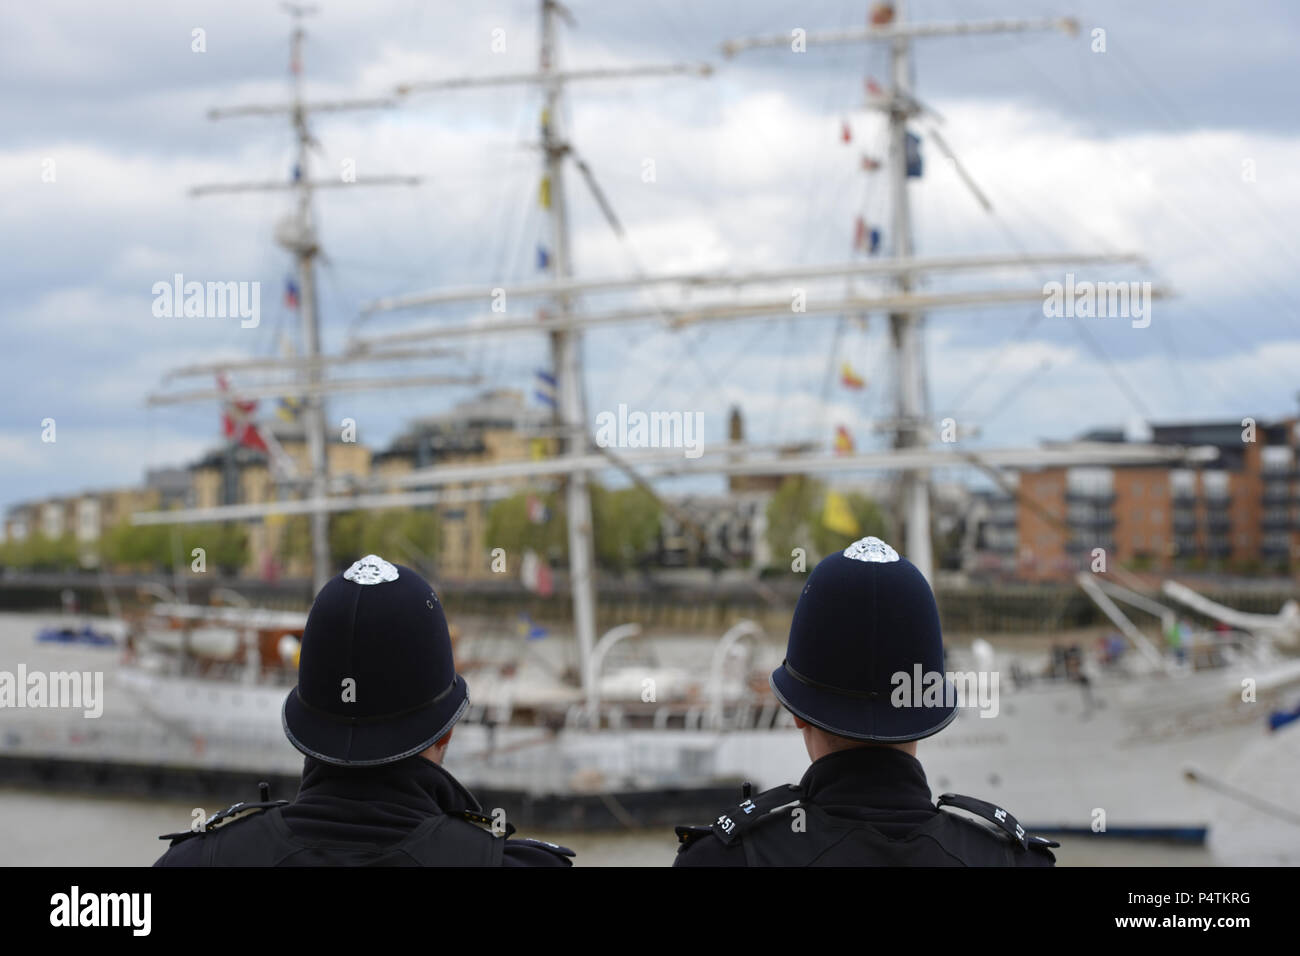 Aunque hay mucho de interés para distraer a los policías de Londres se mantengan centradas. Foto de stock